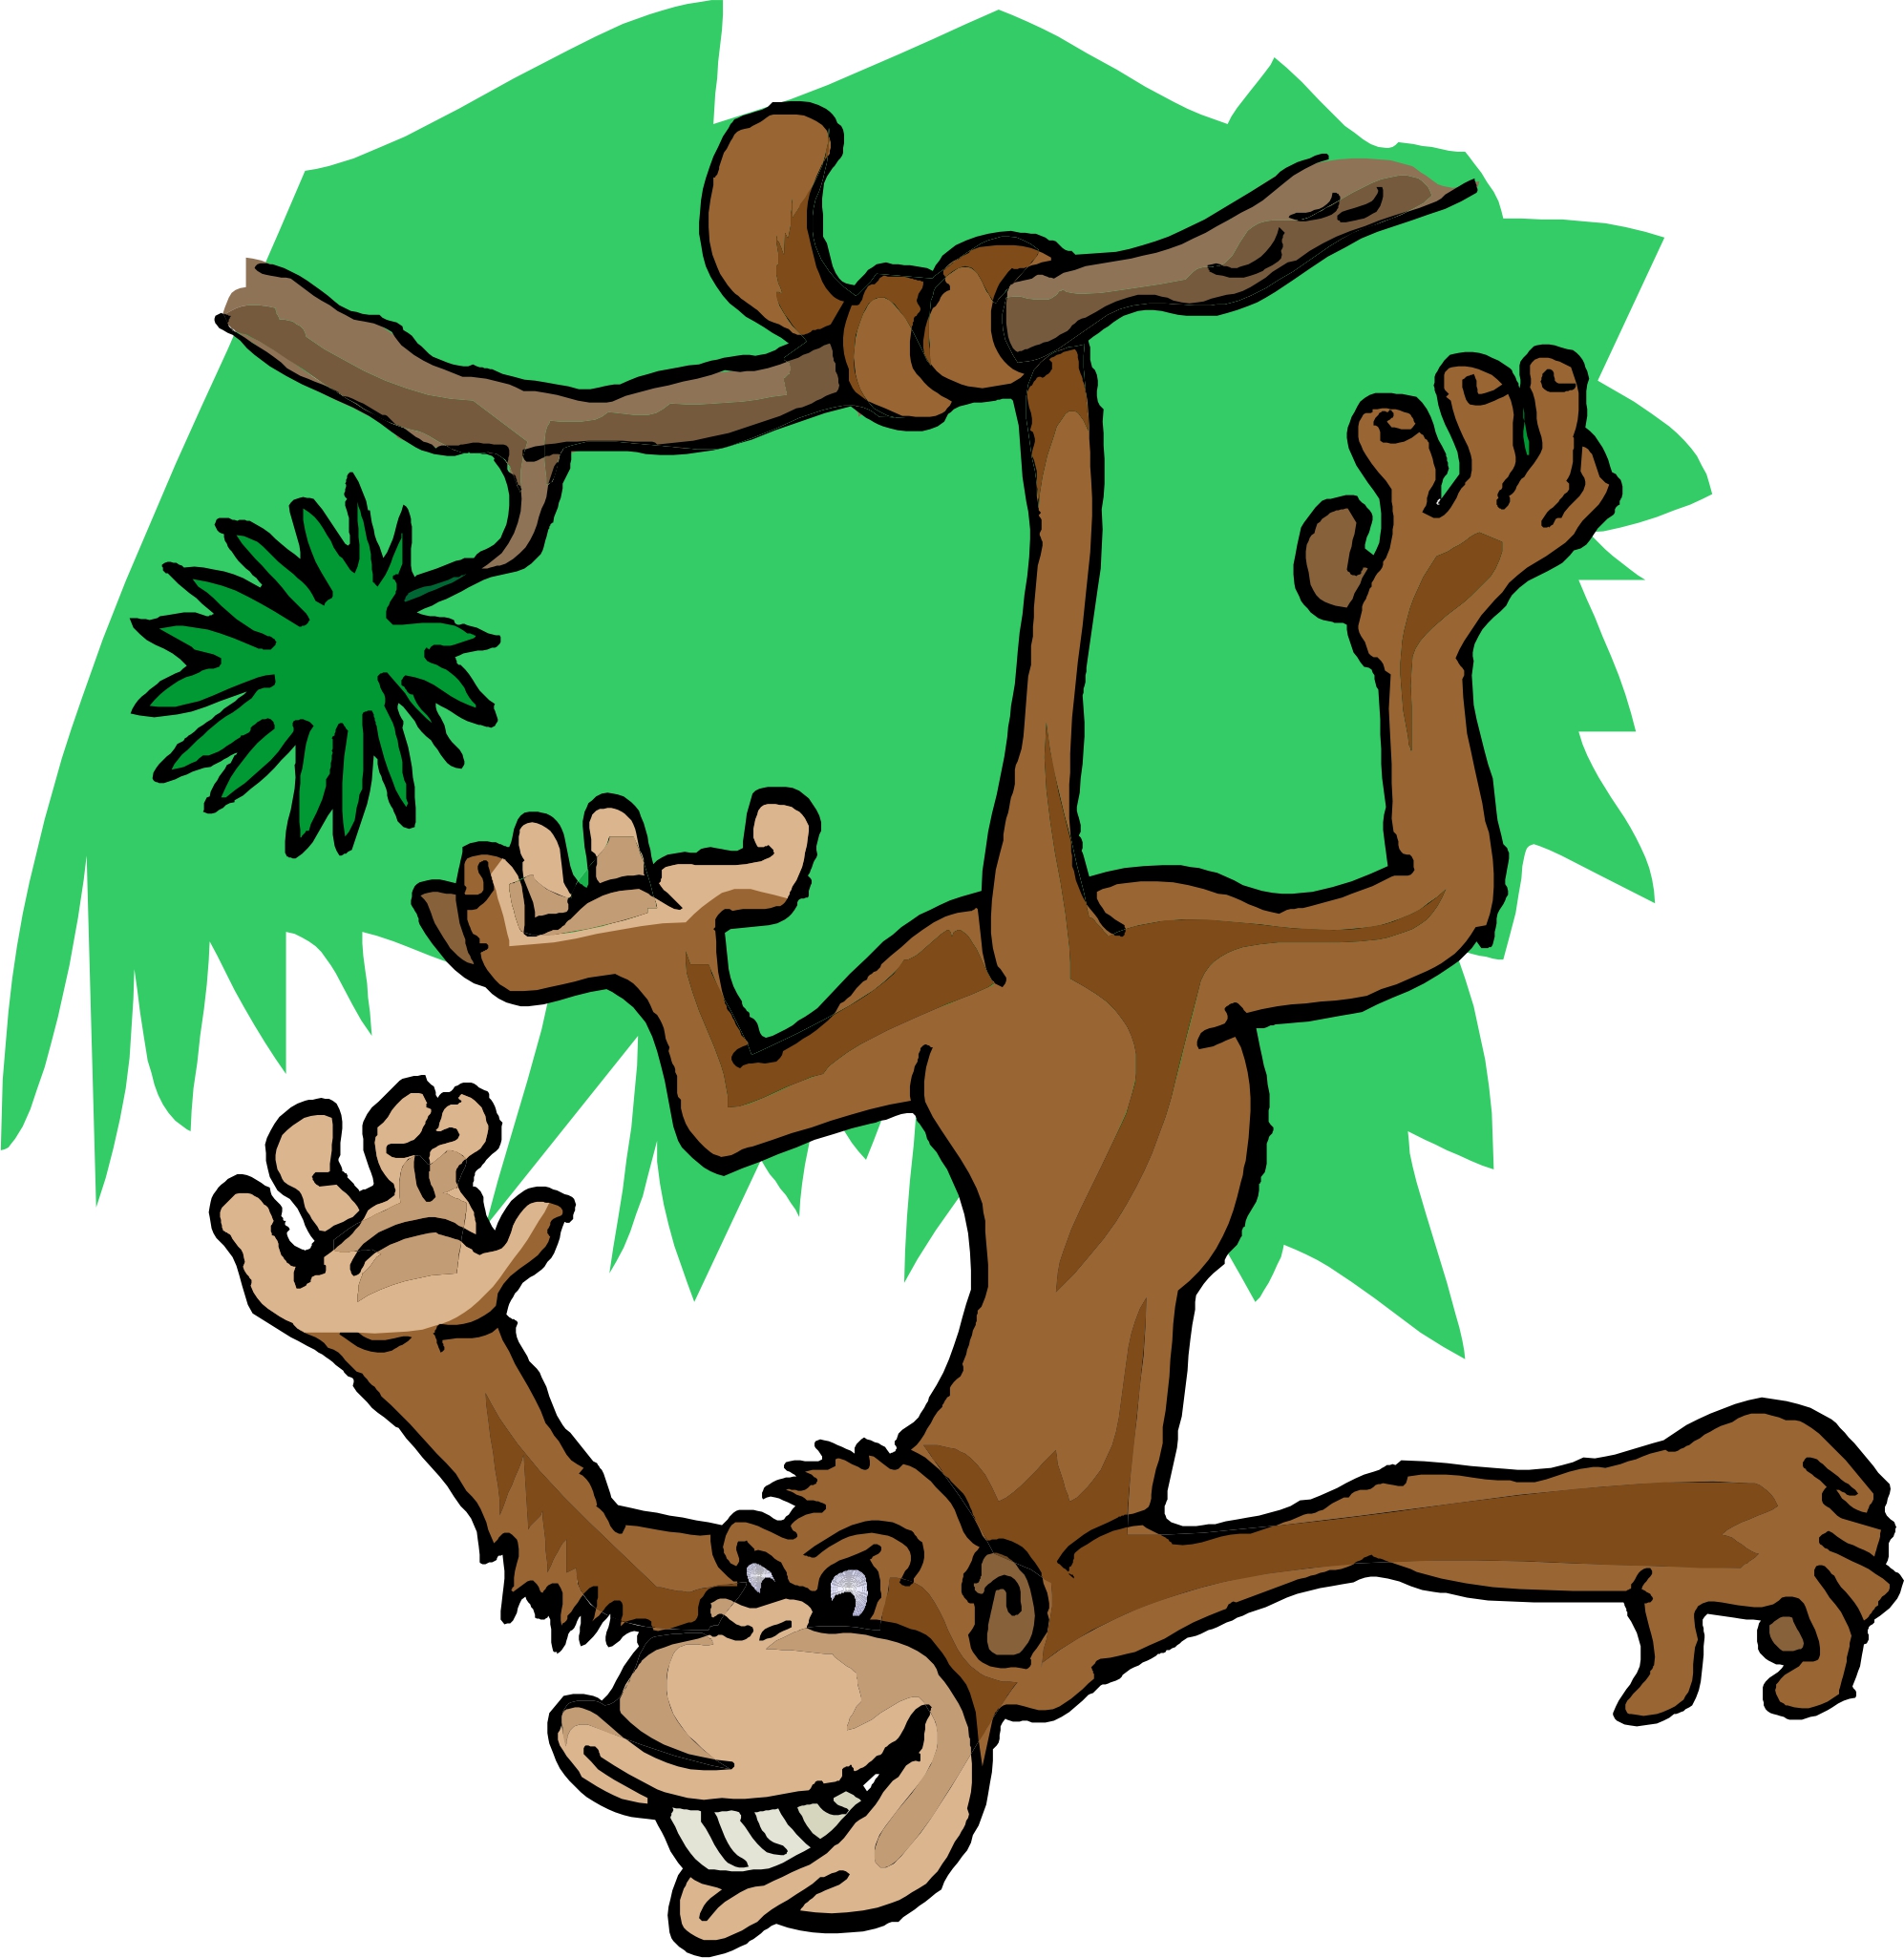 monkey cartoon photo - www.